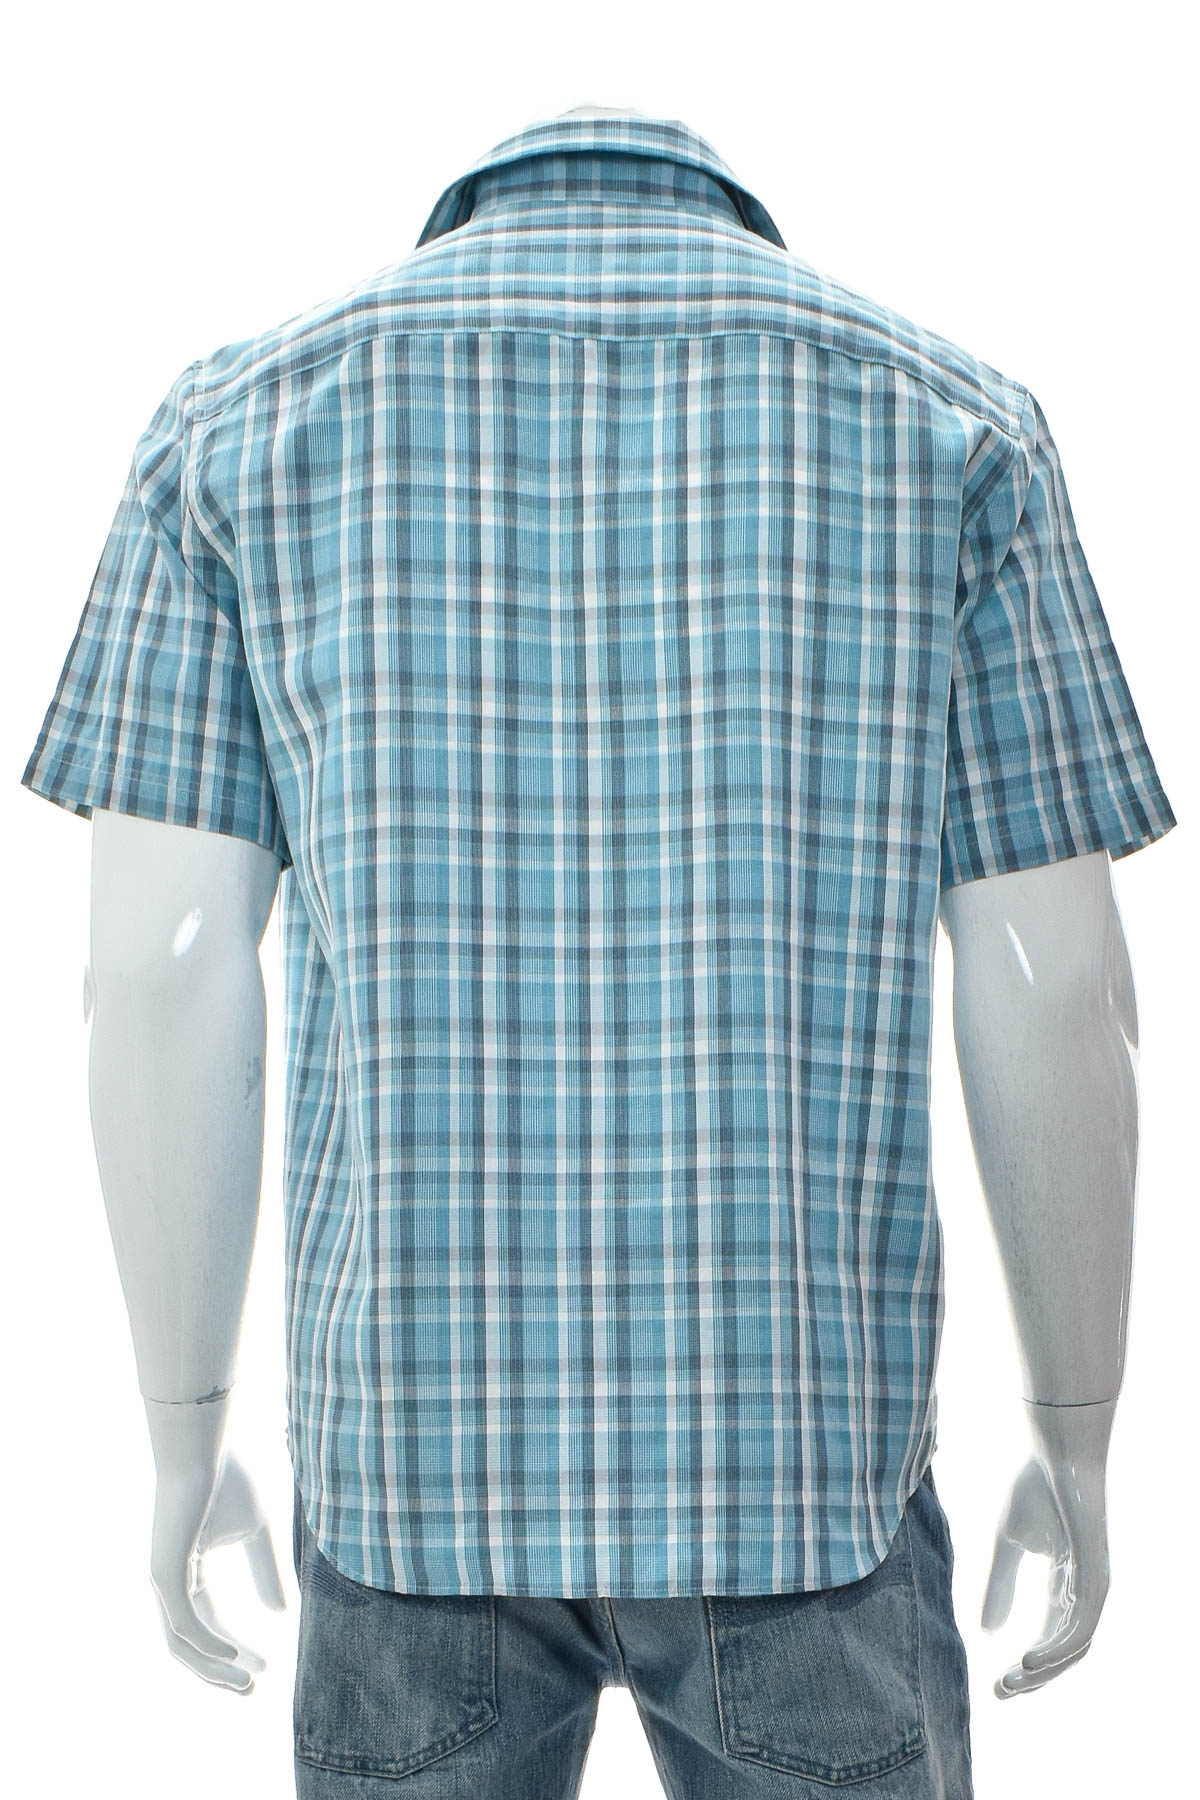 Ανδρικό πουκάμισο - M&S COLLECTION - 1